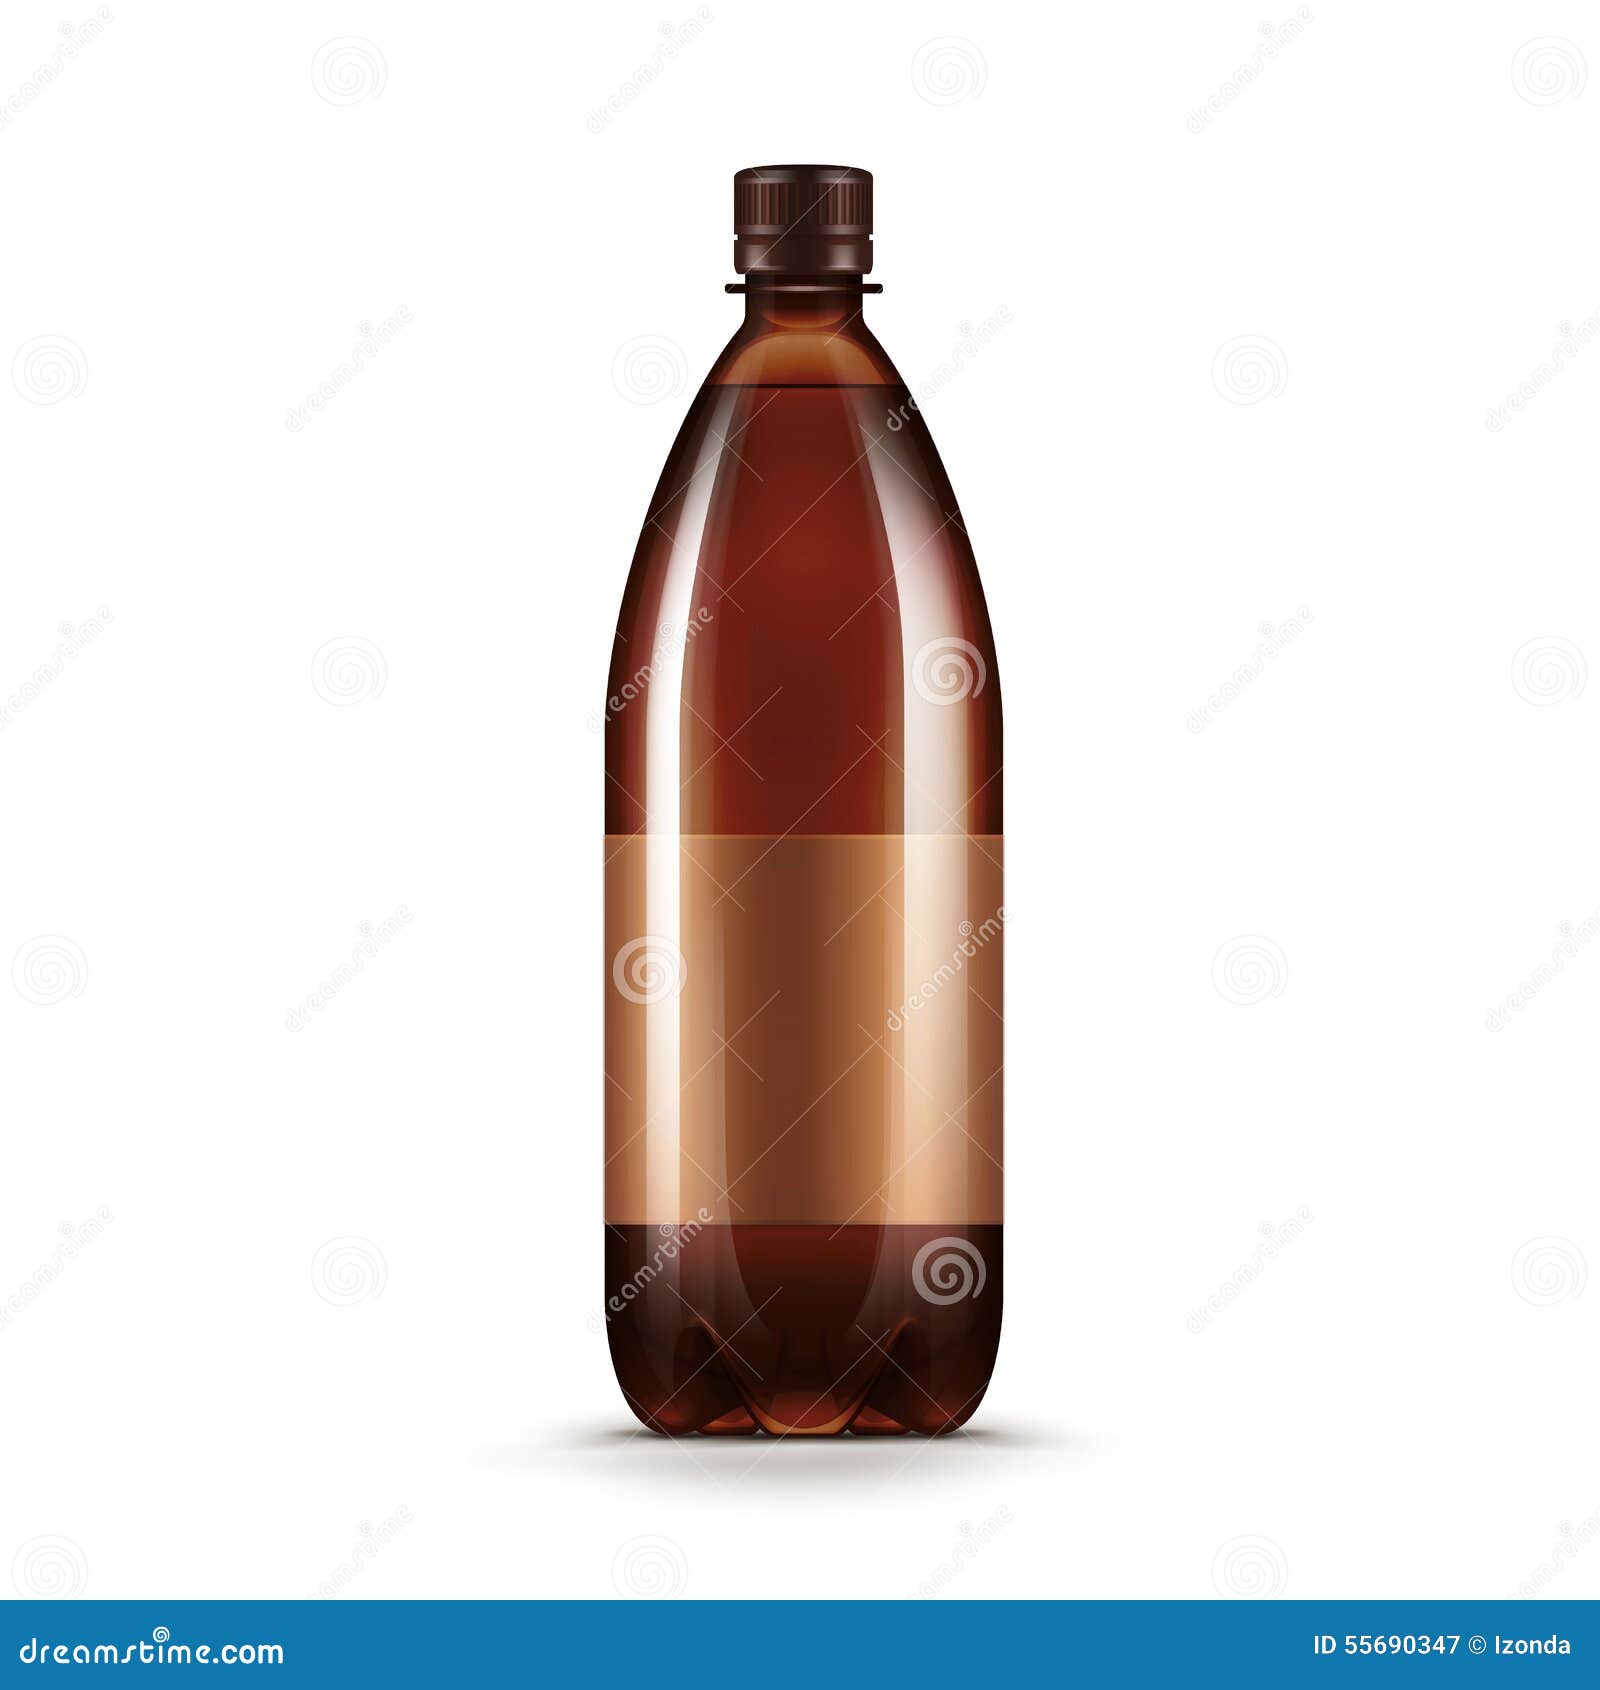 Квас в пластиковой бутылке. Бутылка кваса. Квас в пластиковых бутылках. Коричневая пластиковая бутылка. Пиво в пластиковых бутылках.